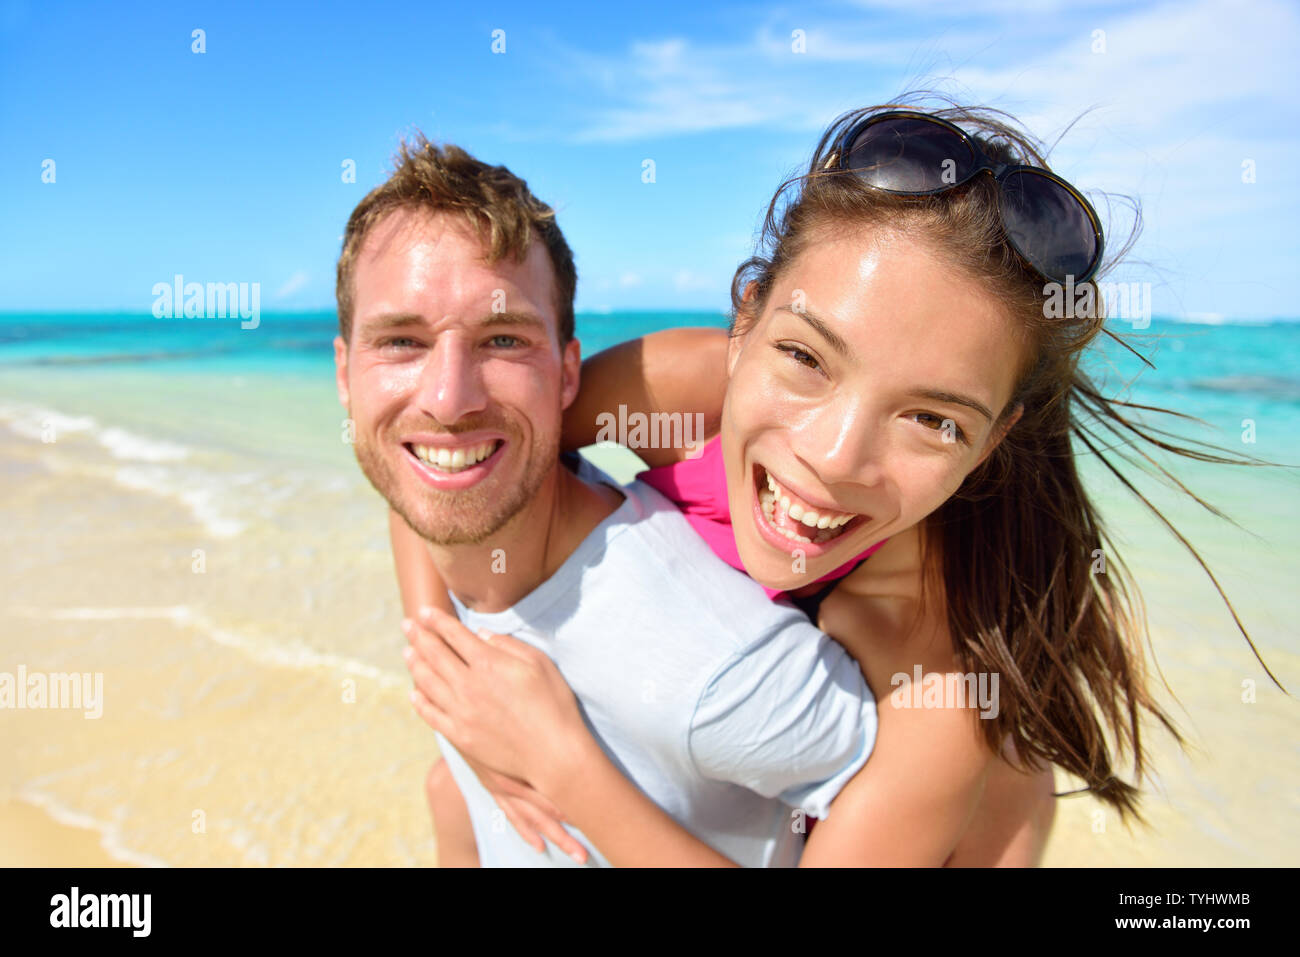 Jeune couple laughing on beach holidays. Belle asiatique mixed race woman greffant sur caucasien homme excité à portrait de l'appareil photo. Société multiculturelle, multiethnique, multiraciale. Banque D'Images